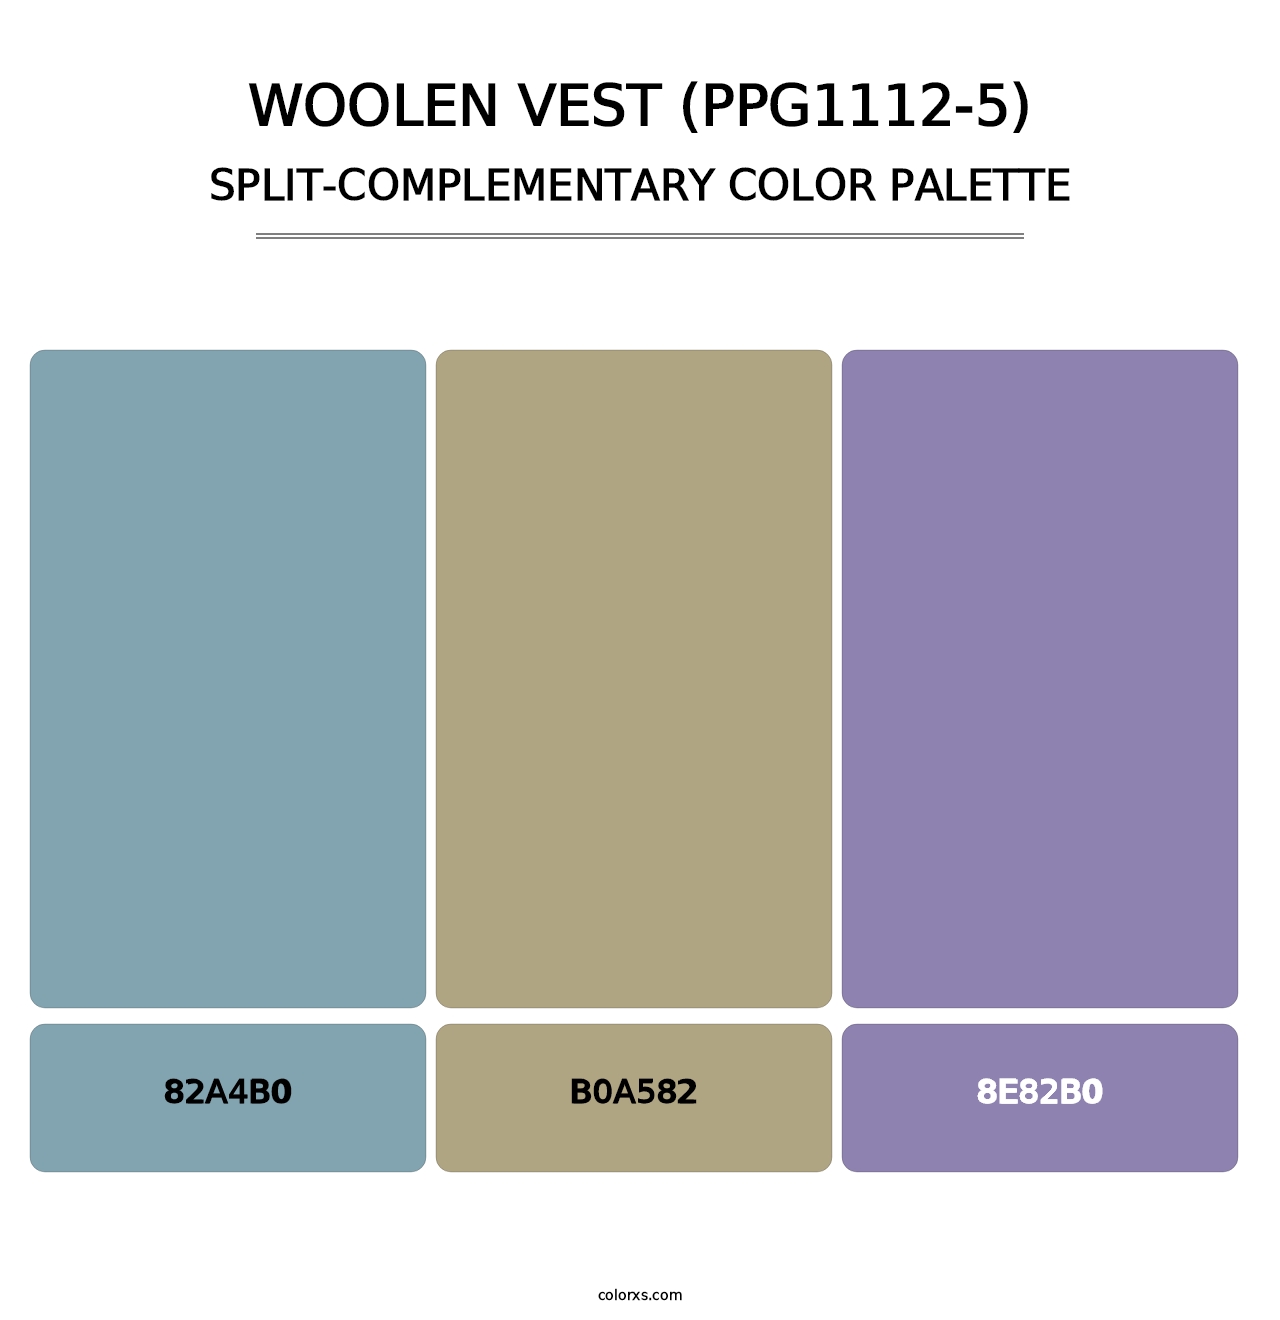 Woolen Vest (PPG1112-5) - Split-Complementary Color Palette